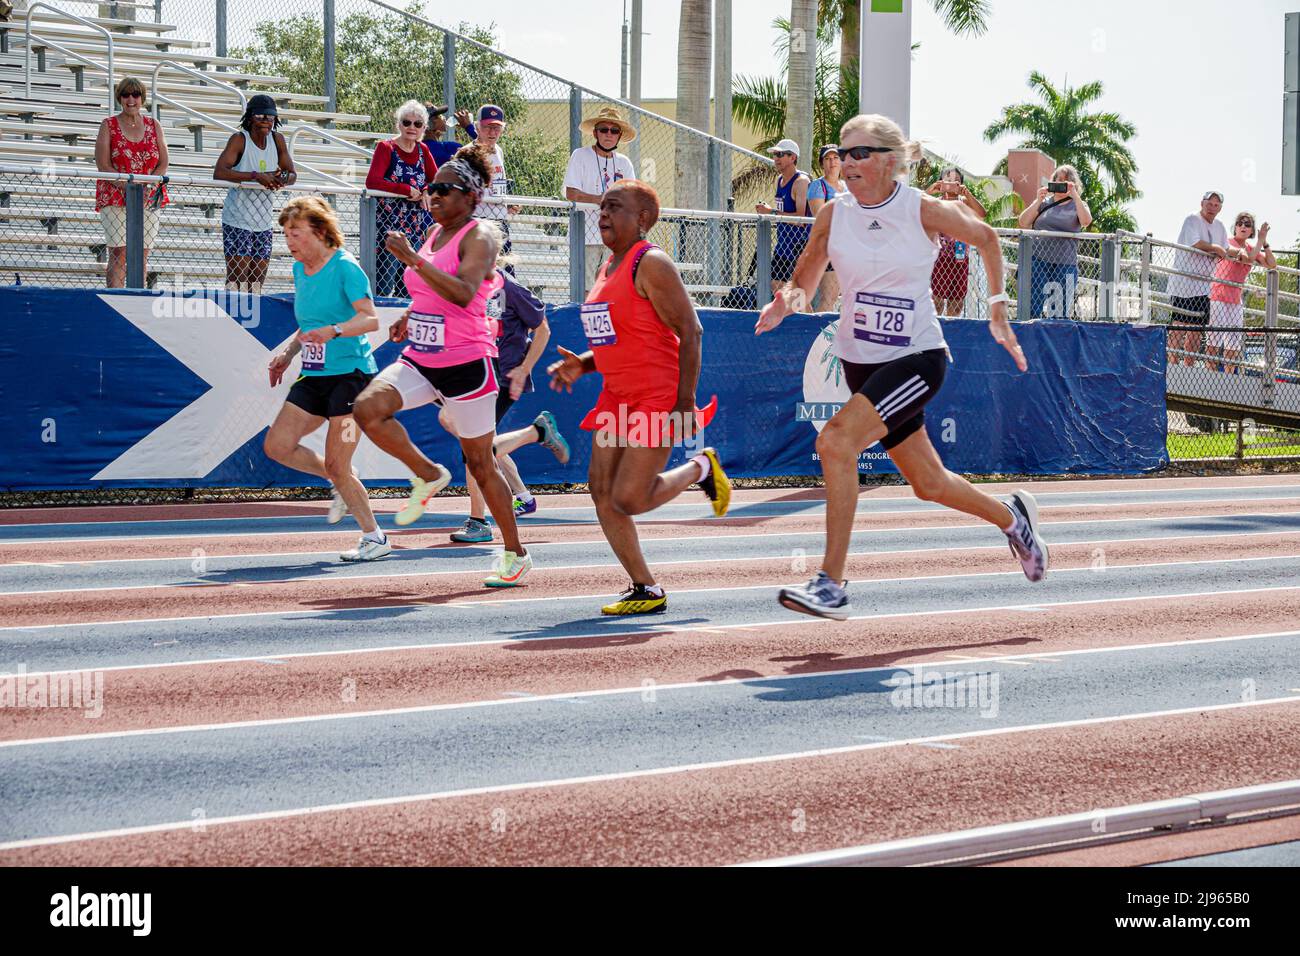 Fort ft. Lauderdale Florida, Ansin Sports Complex Track & Field National Senior Games, seniors femmes noires coureurs course à pied concurrents Banque D'Images